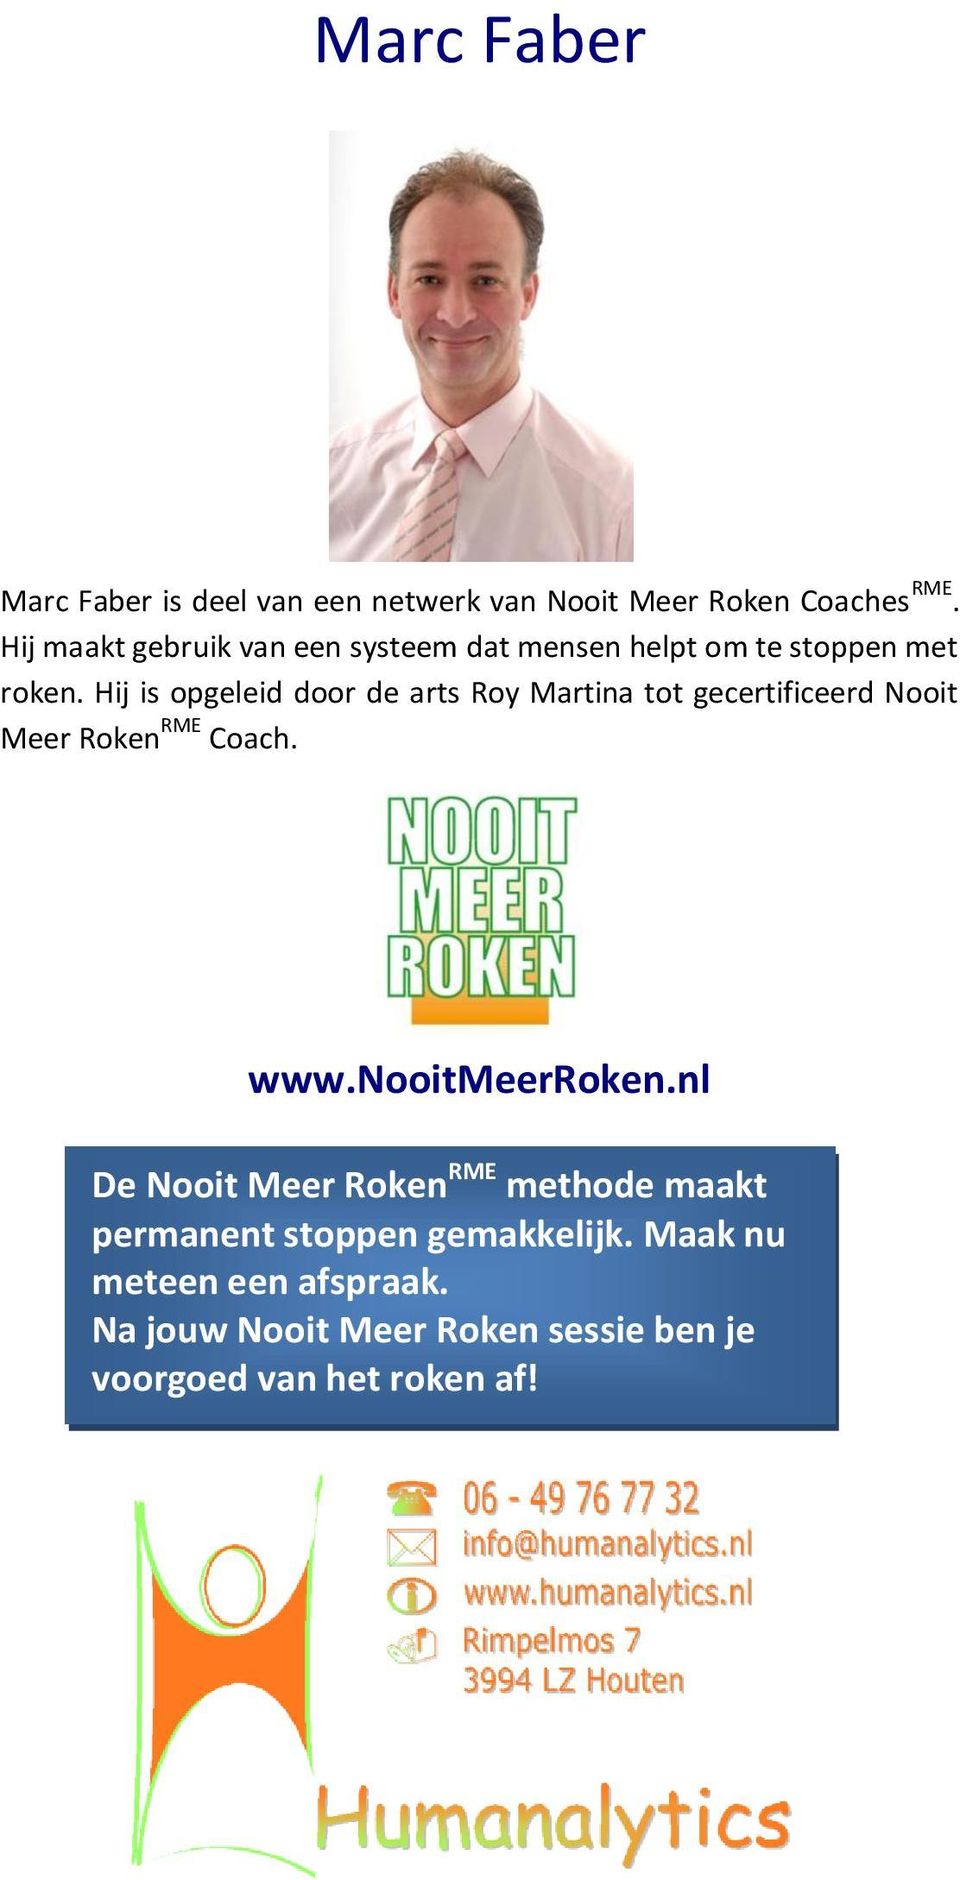 Hij is opgeleid door de arts Roy Martina tot gecertificeerd Nooit Meer Roken RME Coach. www.nooitmeerroken.